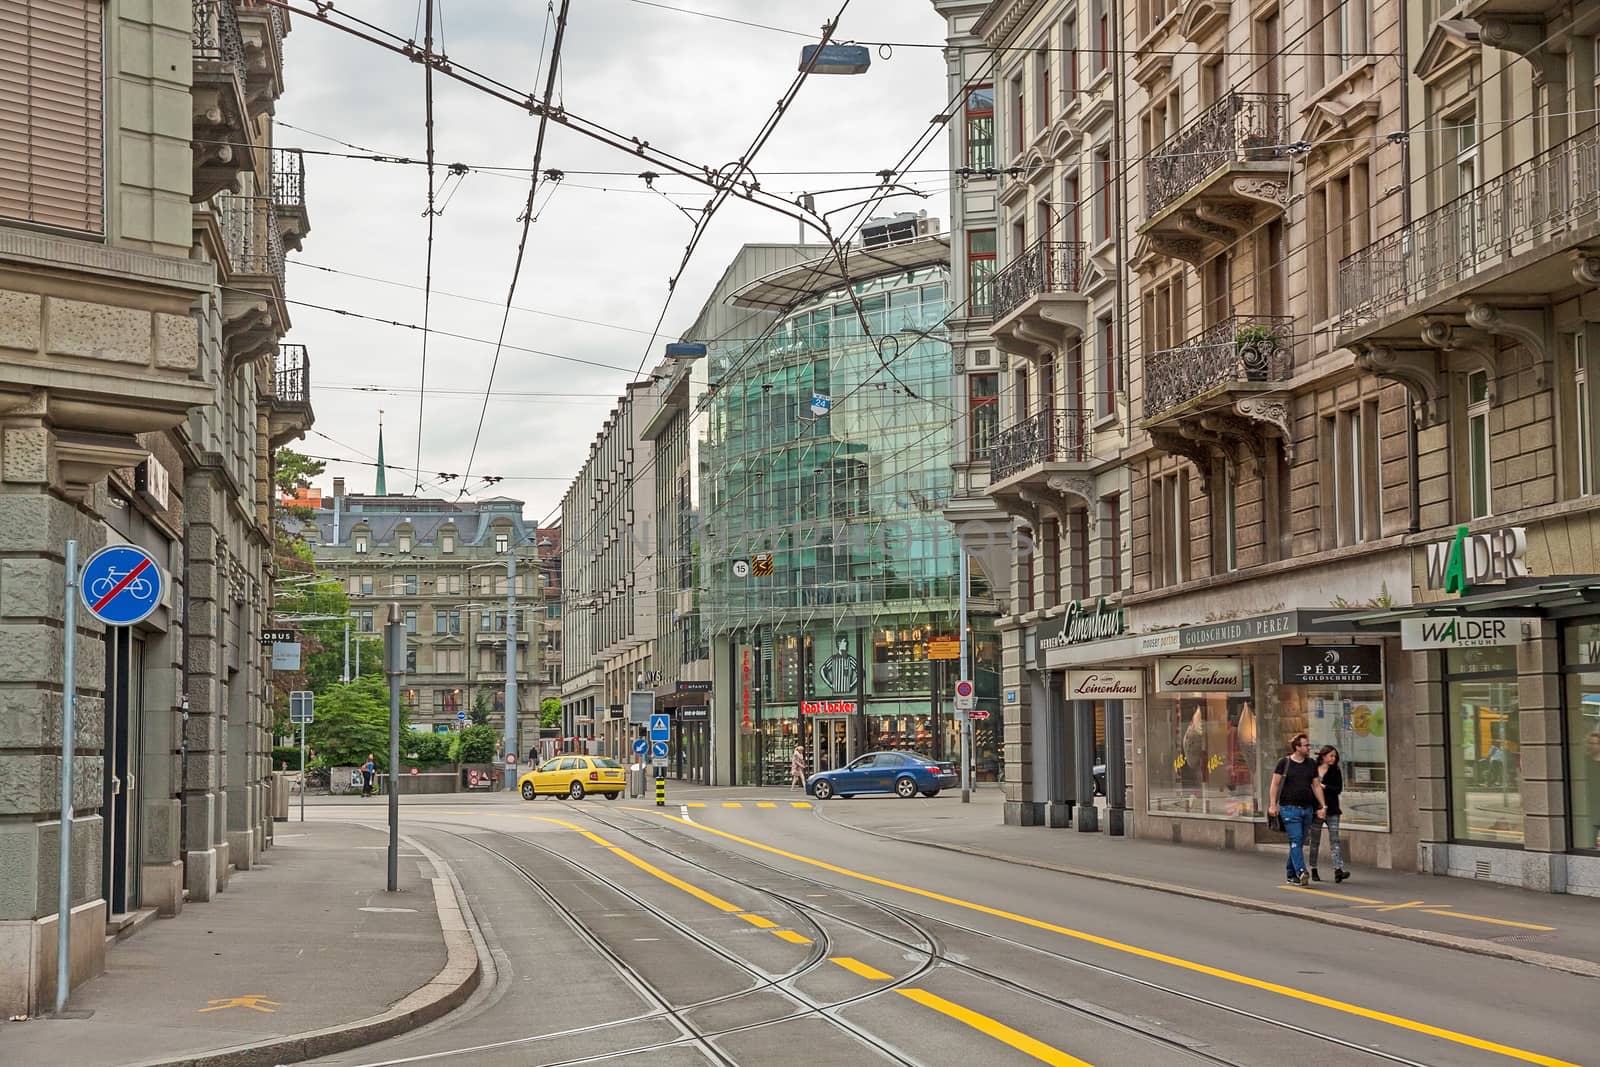 Inner city of Zurich, Switzerland by aldorado